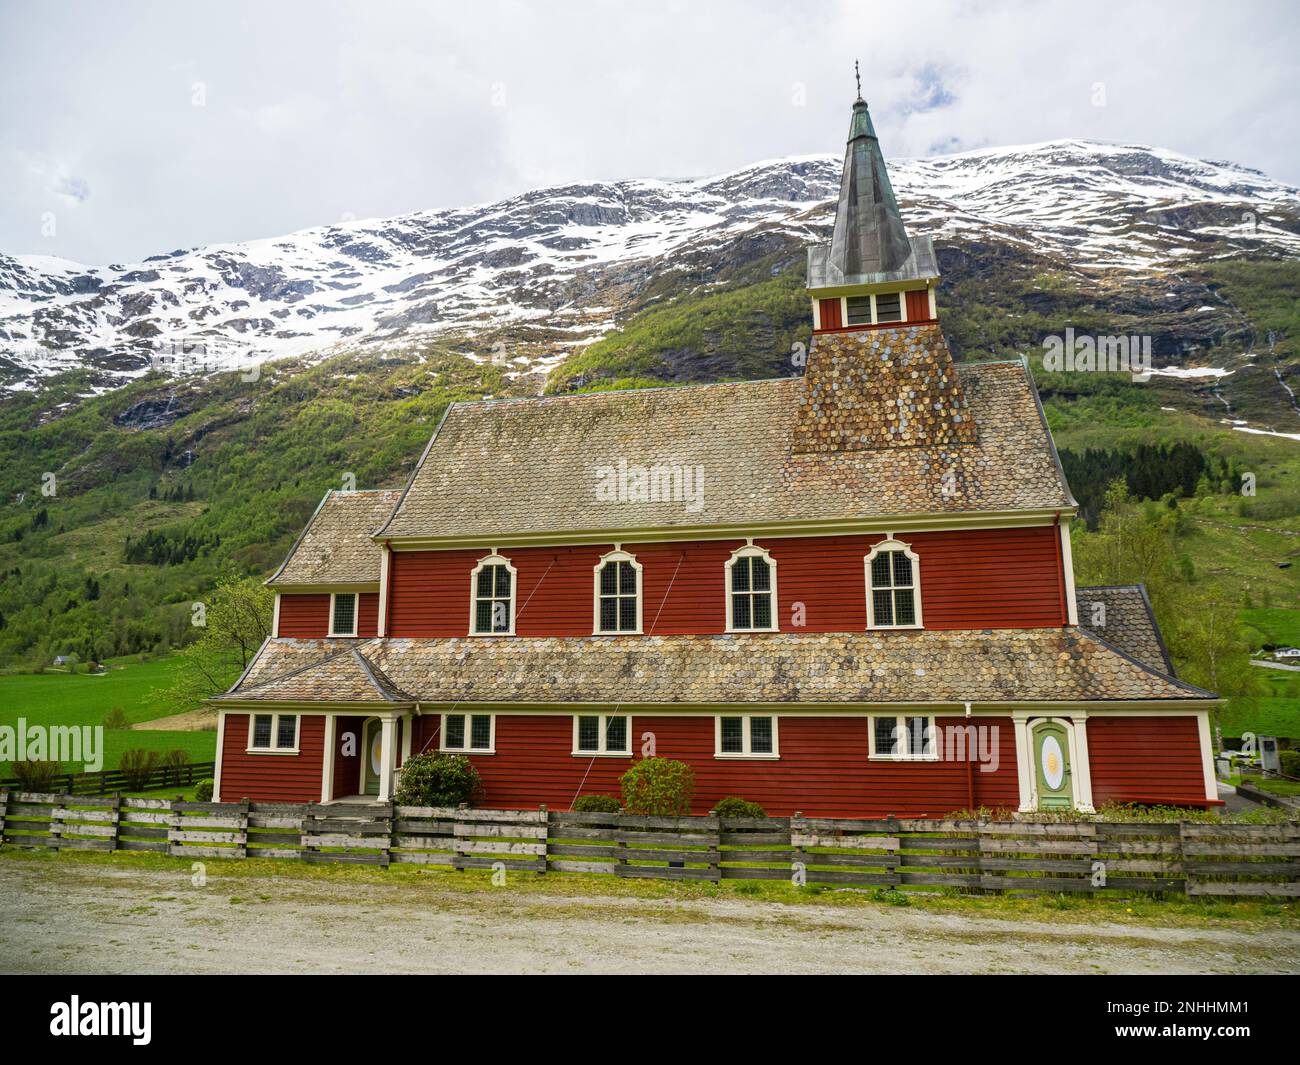 Una vista della chiesa di Olden, norvegese: Olden kirkje, all'interno della valle del fiume Oldedalen, Norvegia. Foto Stock